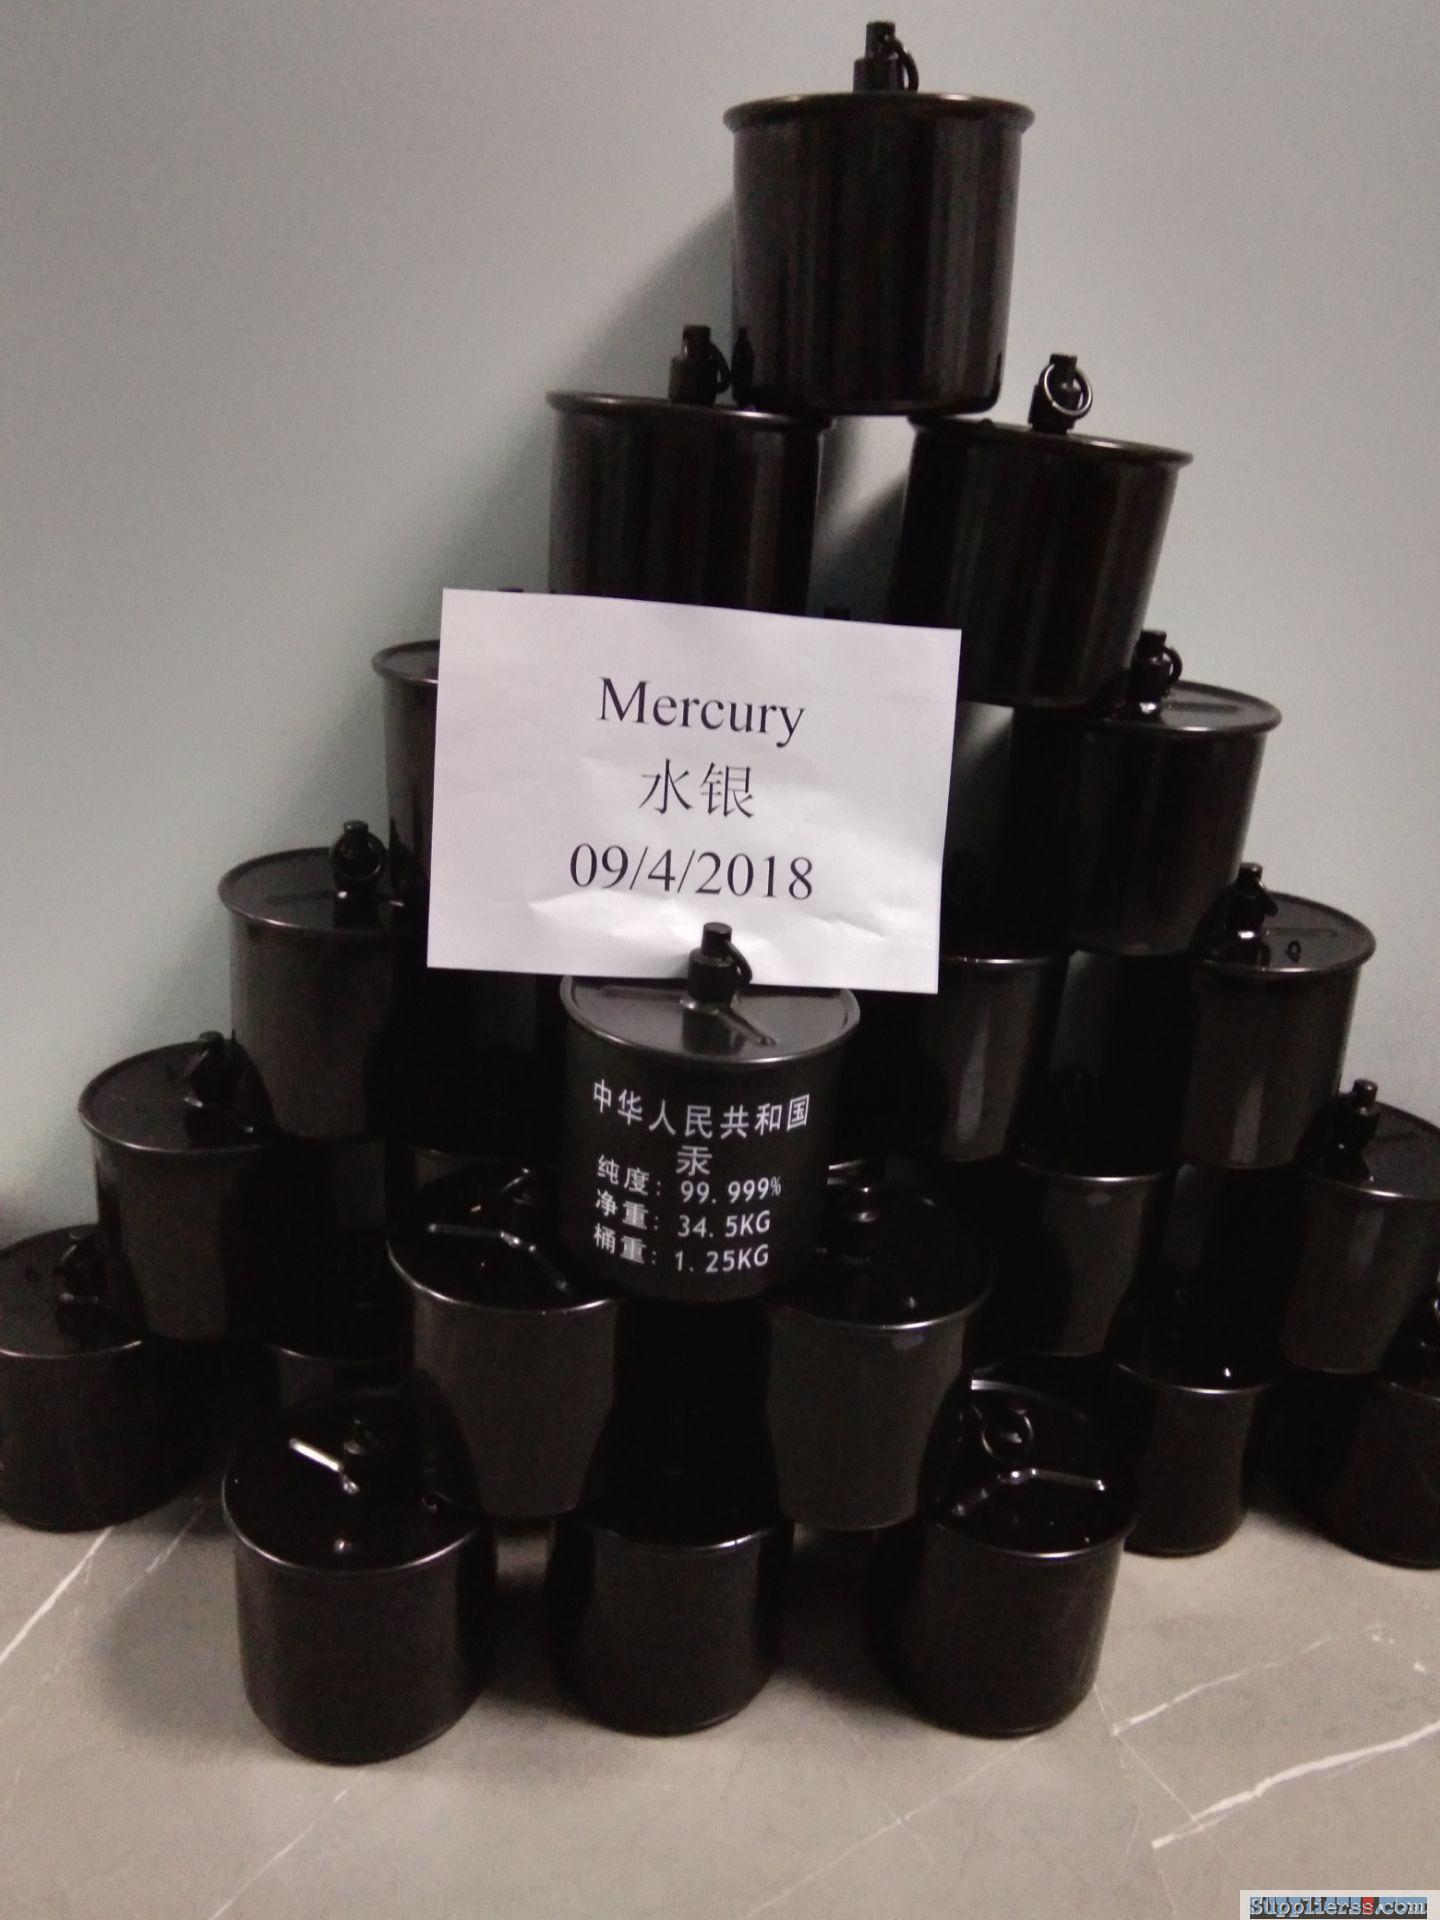 mercury 99.999% mercury 7439-97-6 Quicksilver liquid pmk bmk 13605-48-6 4433-77-6